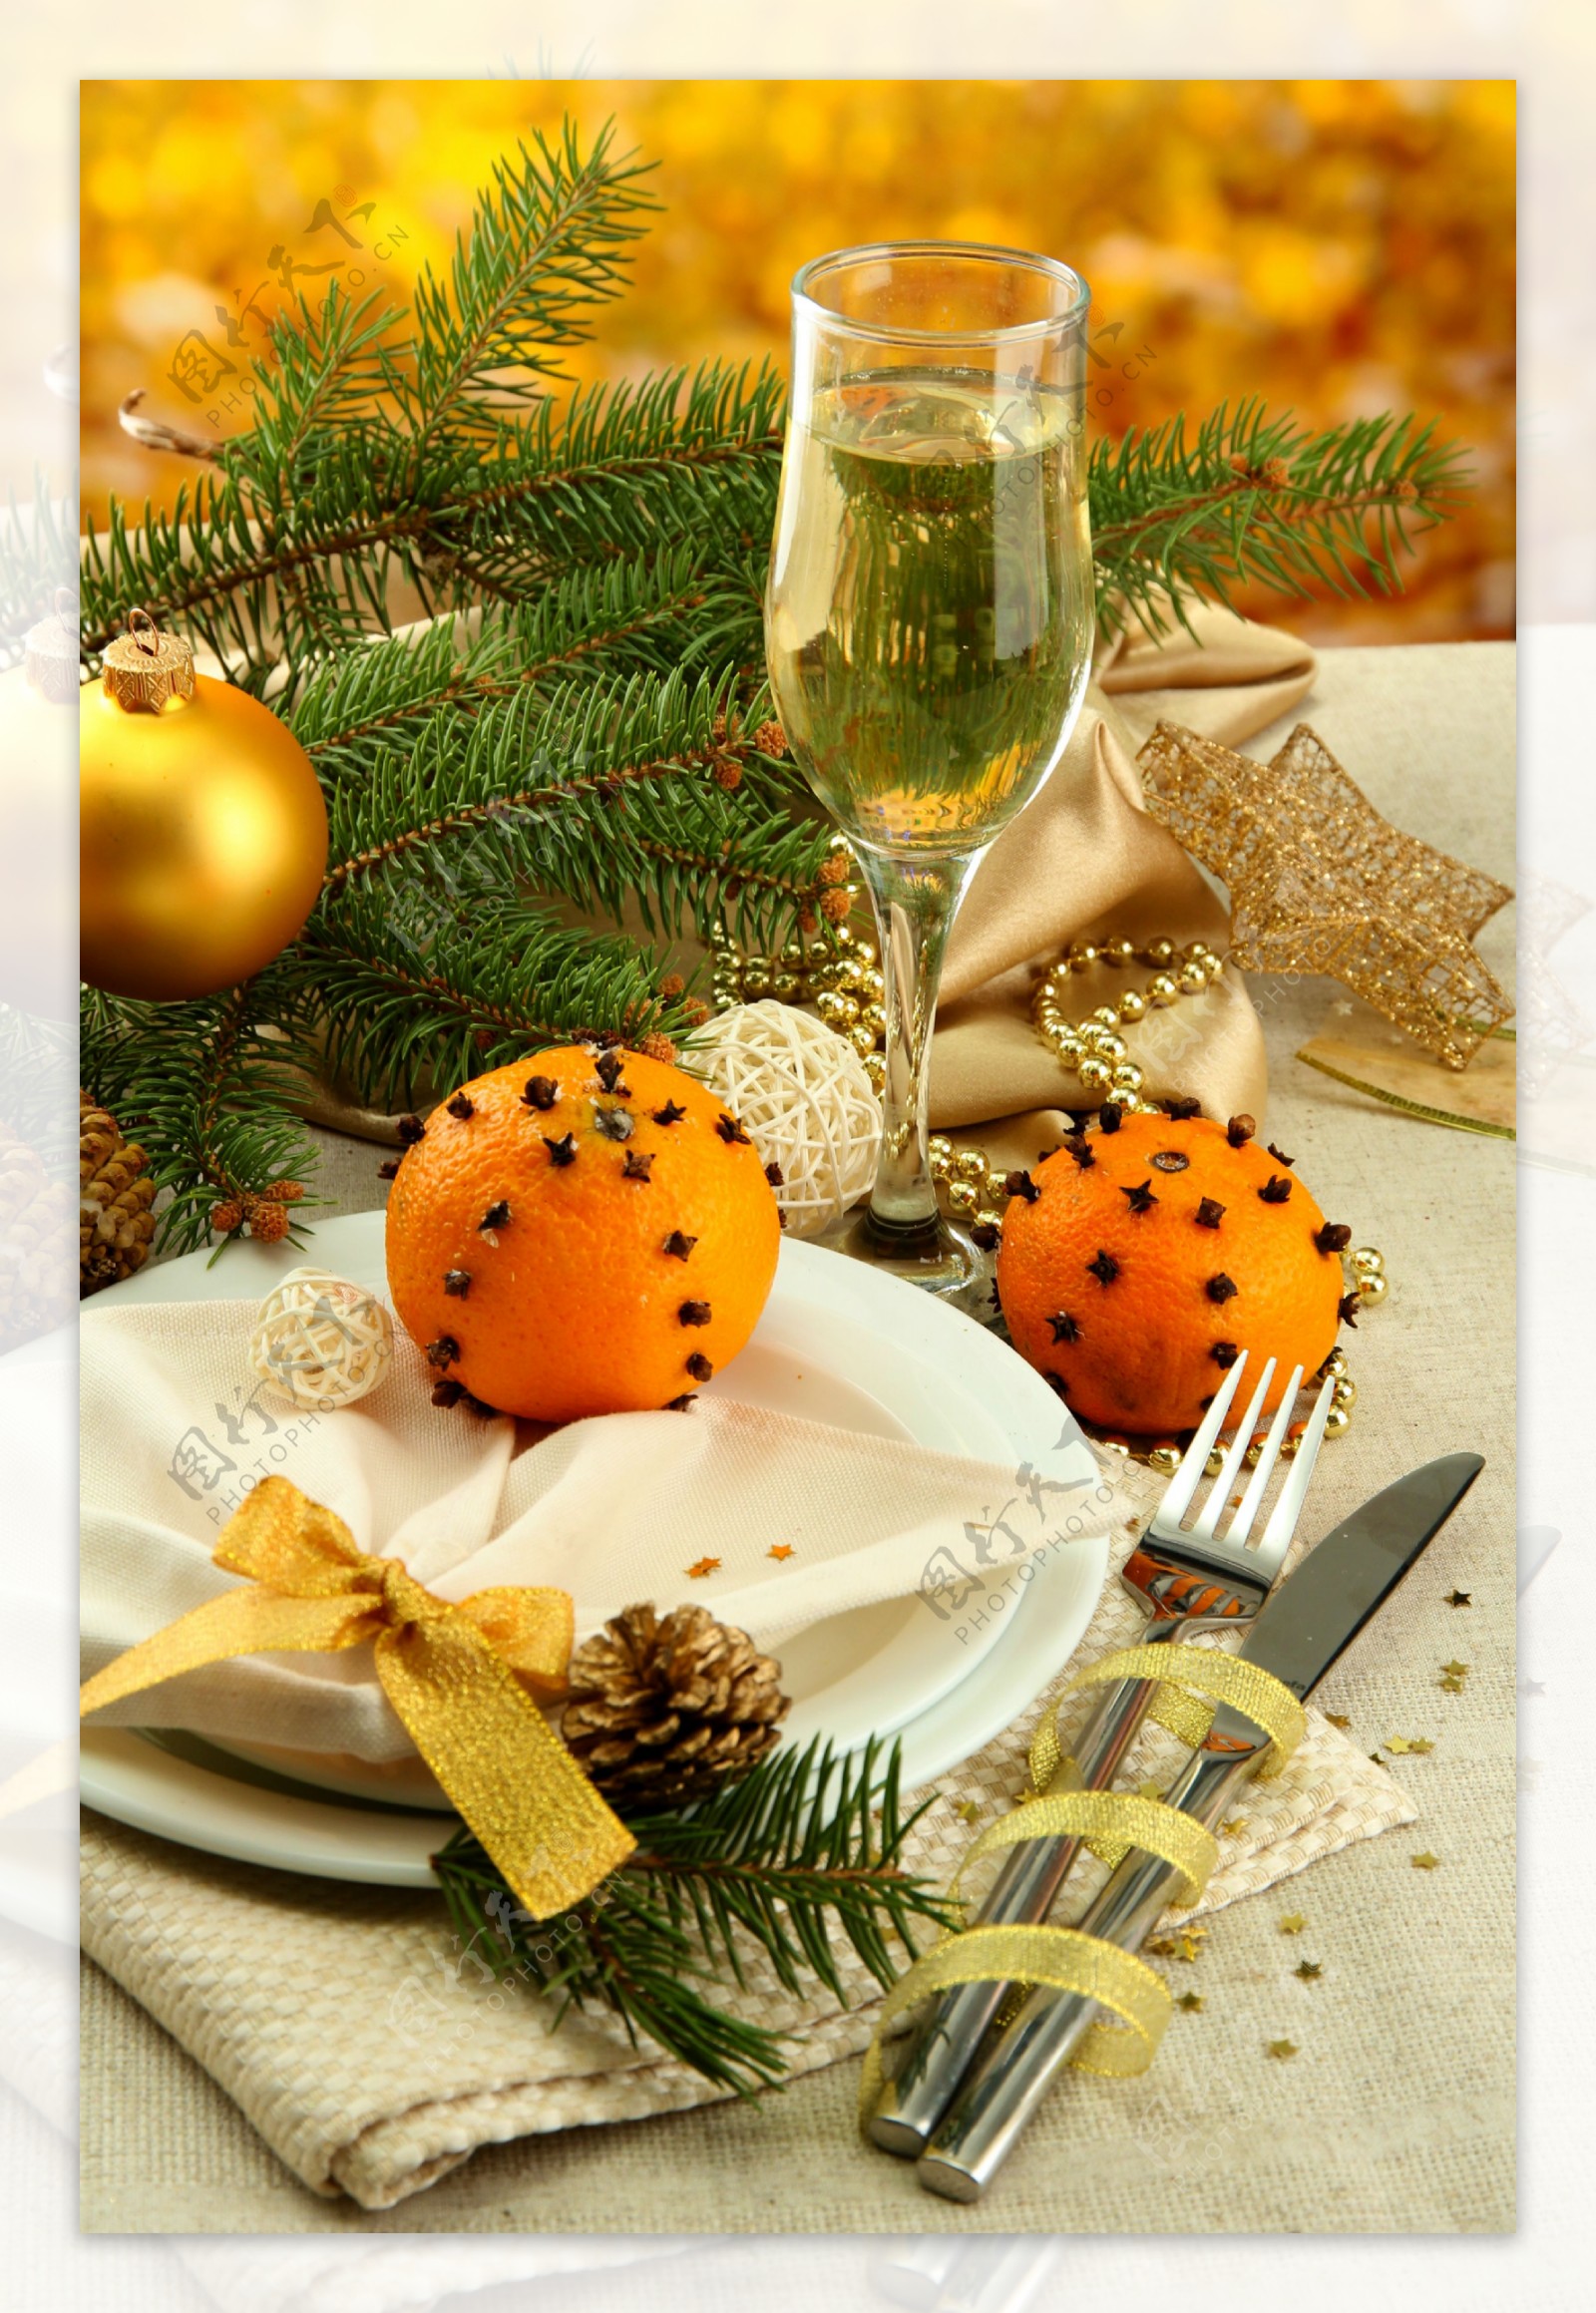 圣诞节上的餐具与树枝图片